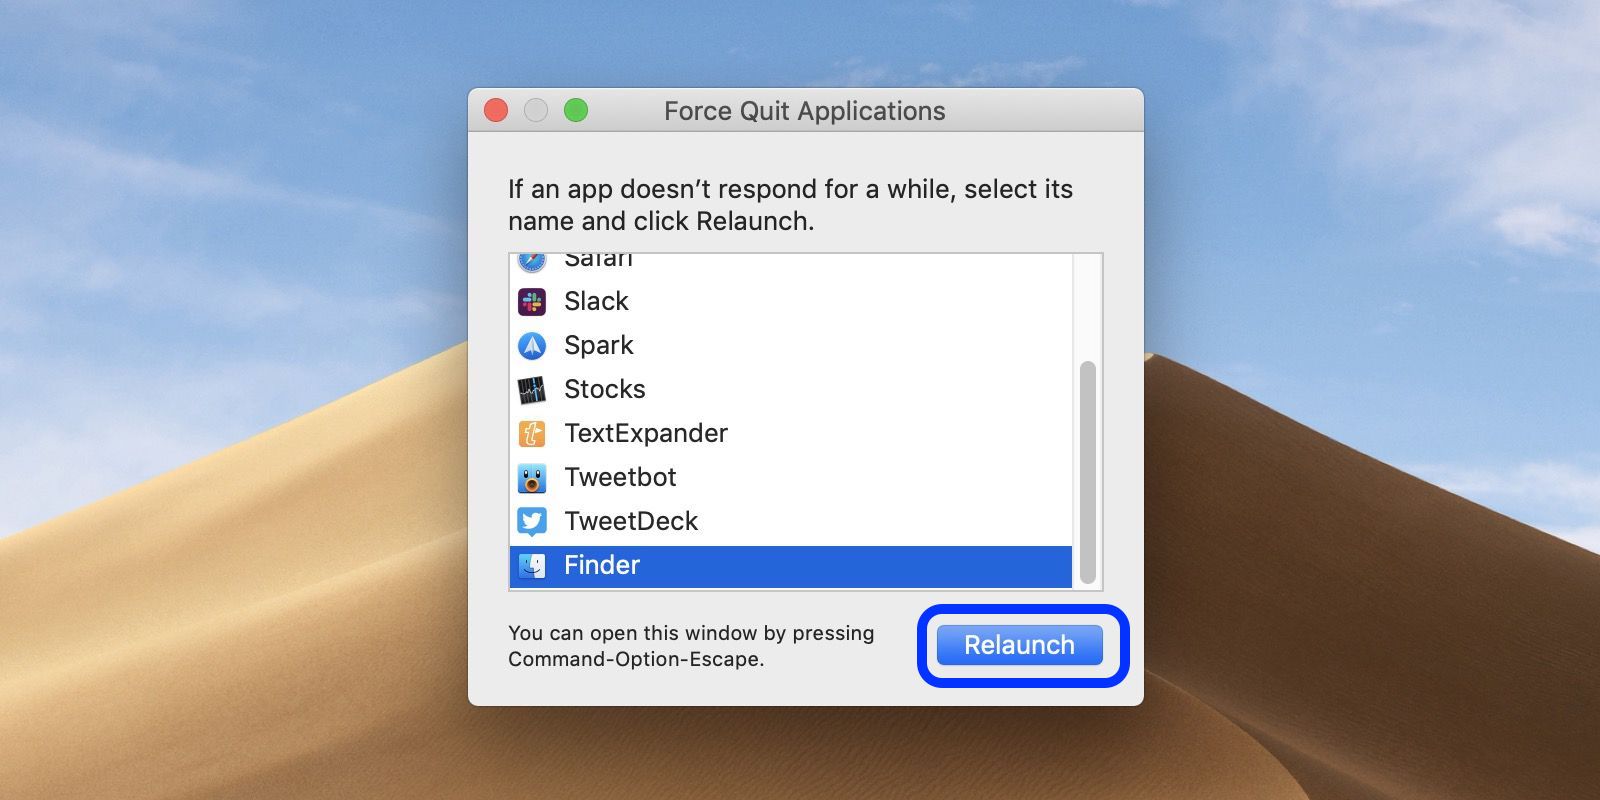 mac restart dictionary